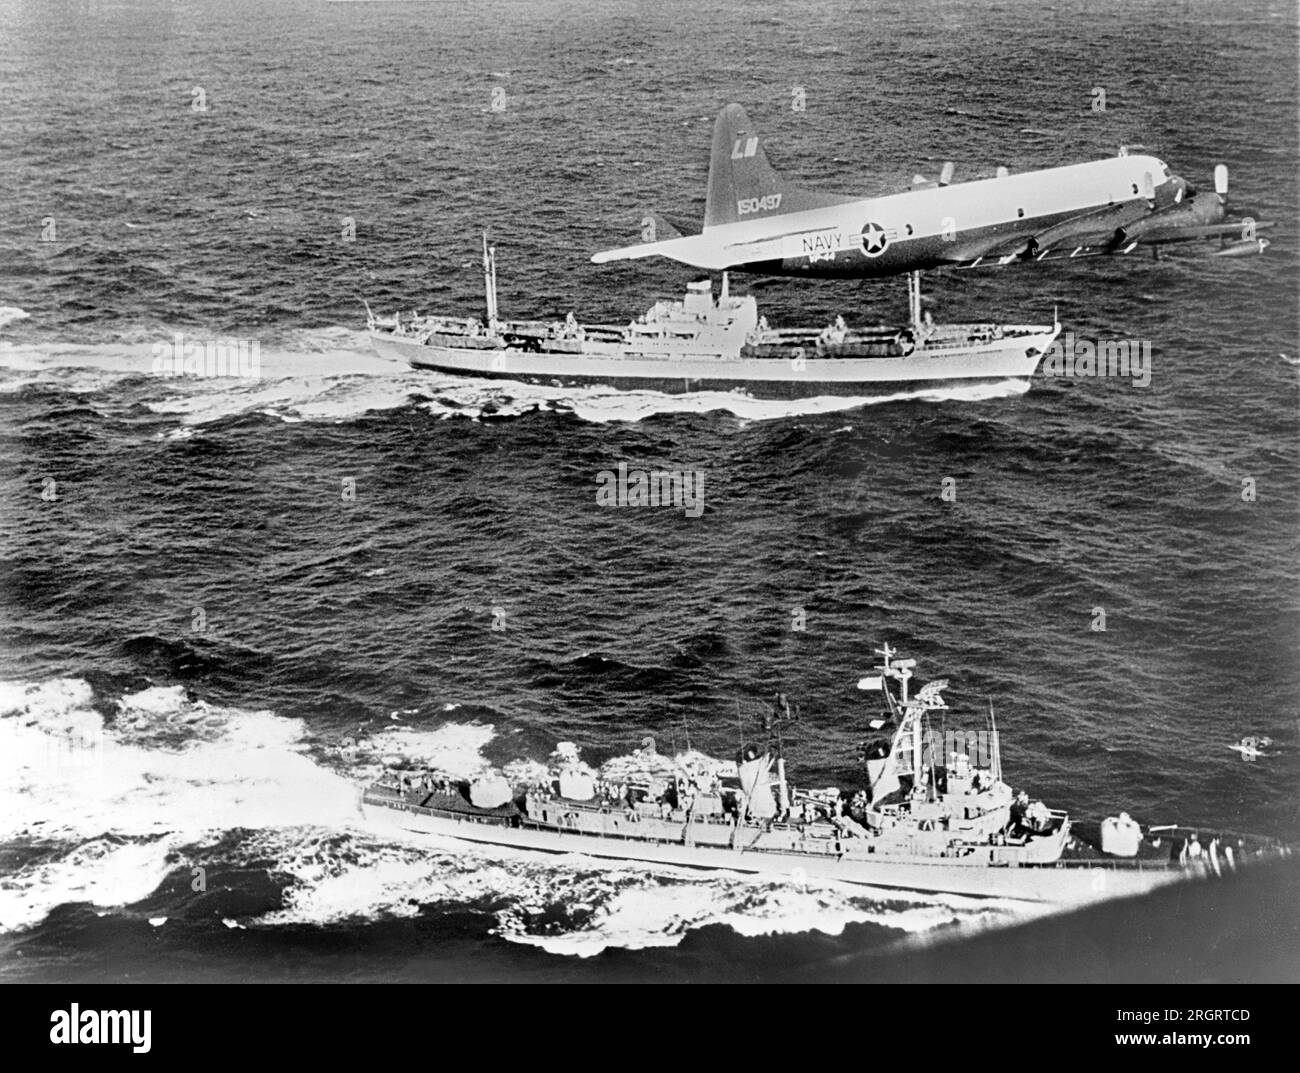 Cuba : 1962 le cargo soviétique Anosov, à l'arrière, étant escorté par un avion de la Marine et le destroyer USS Barry, alors qu'il quitte Cuba probablement chargé de missiles sous la couverture de toile vue sur le pont Banque D'Images